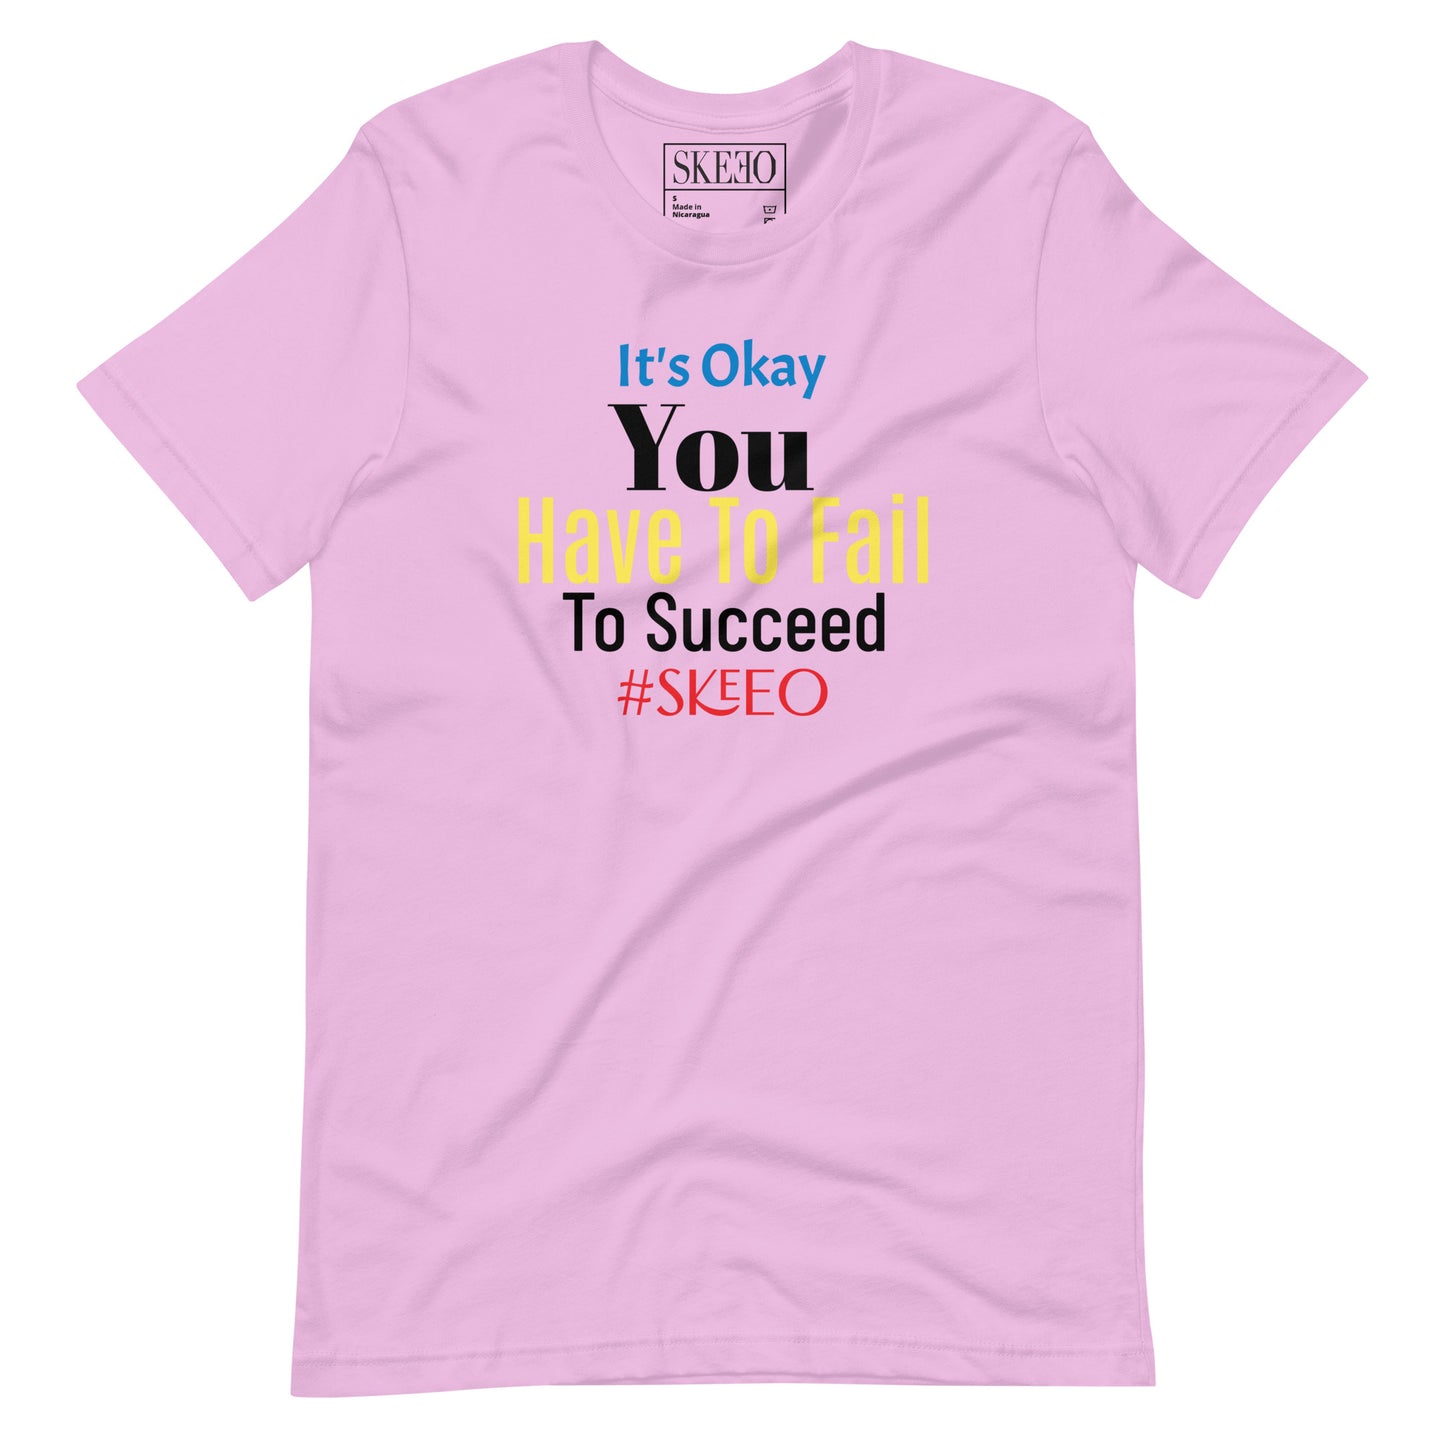 SK A-Succeed t-shirt